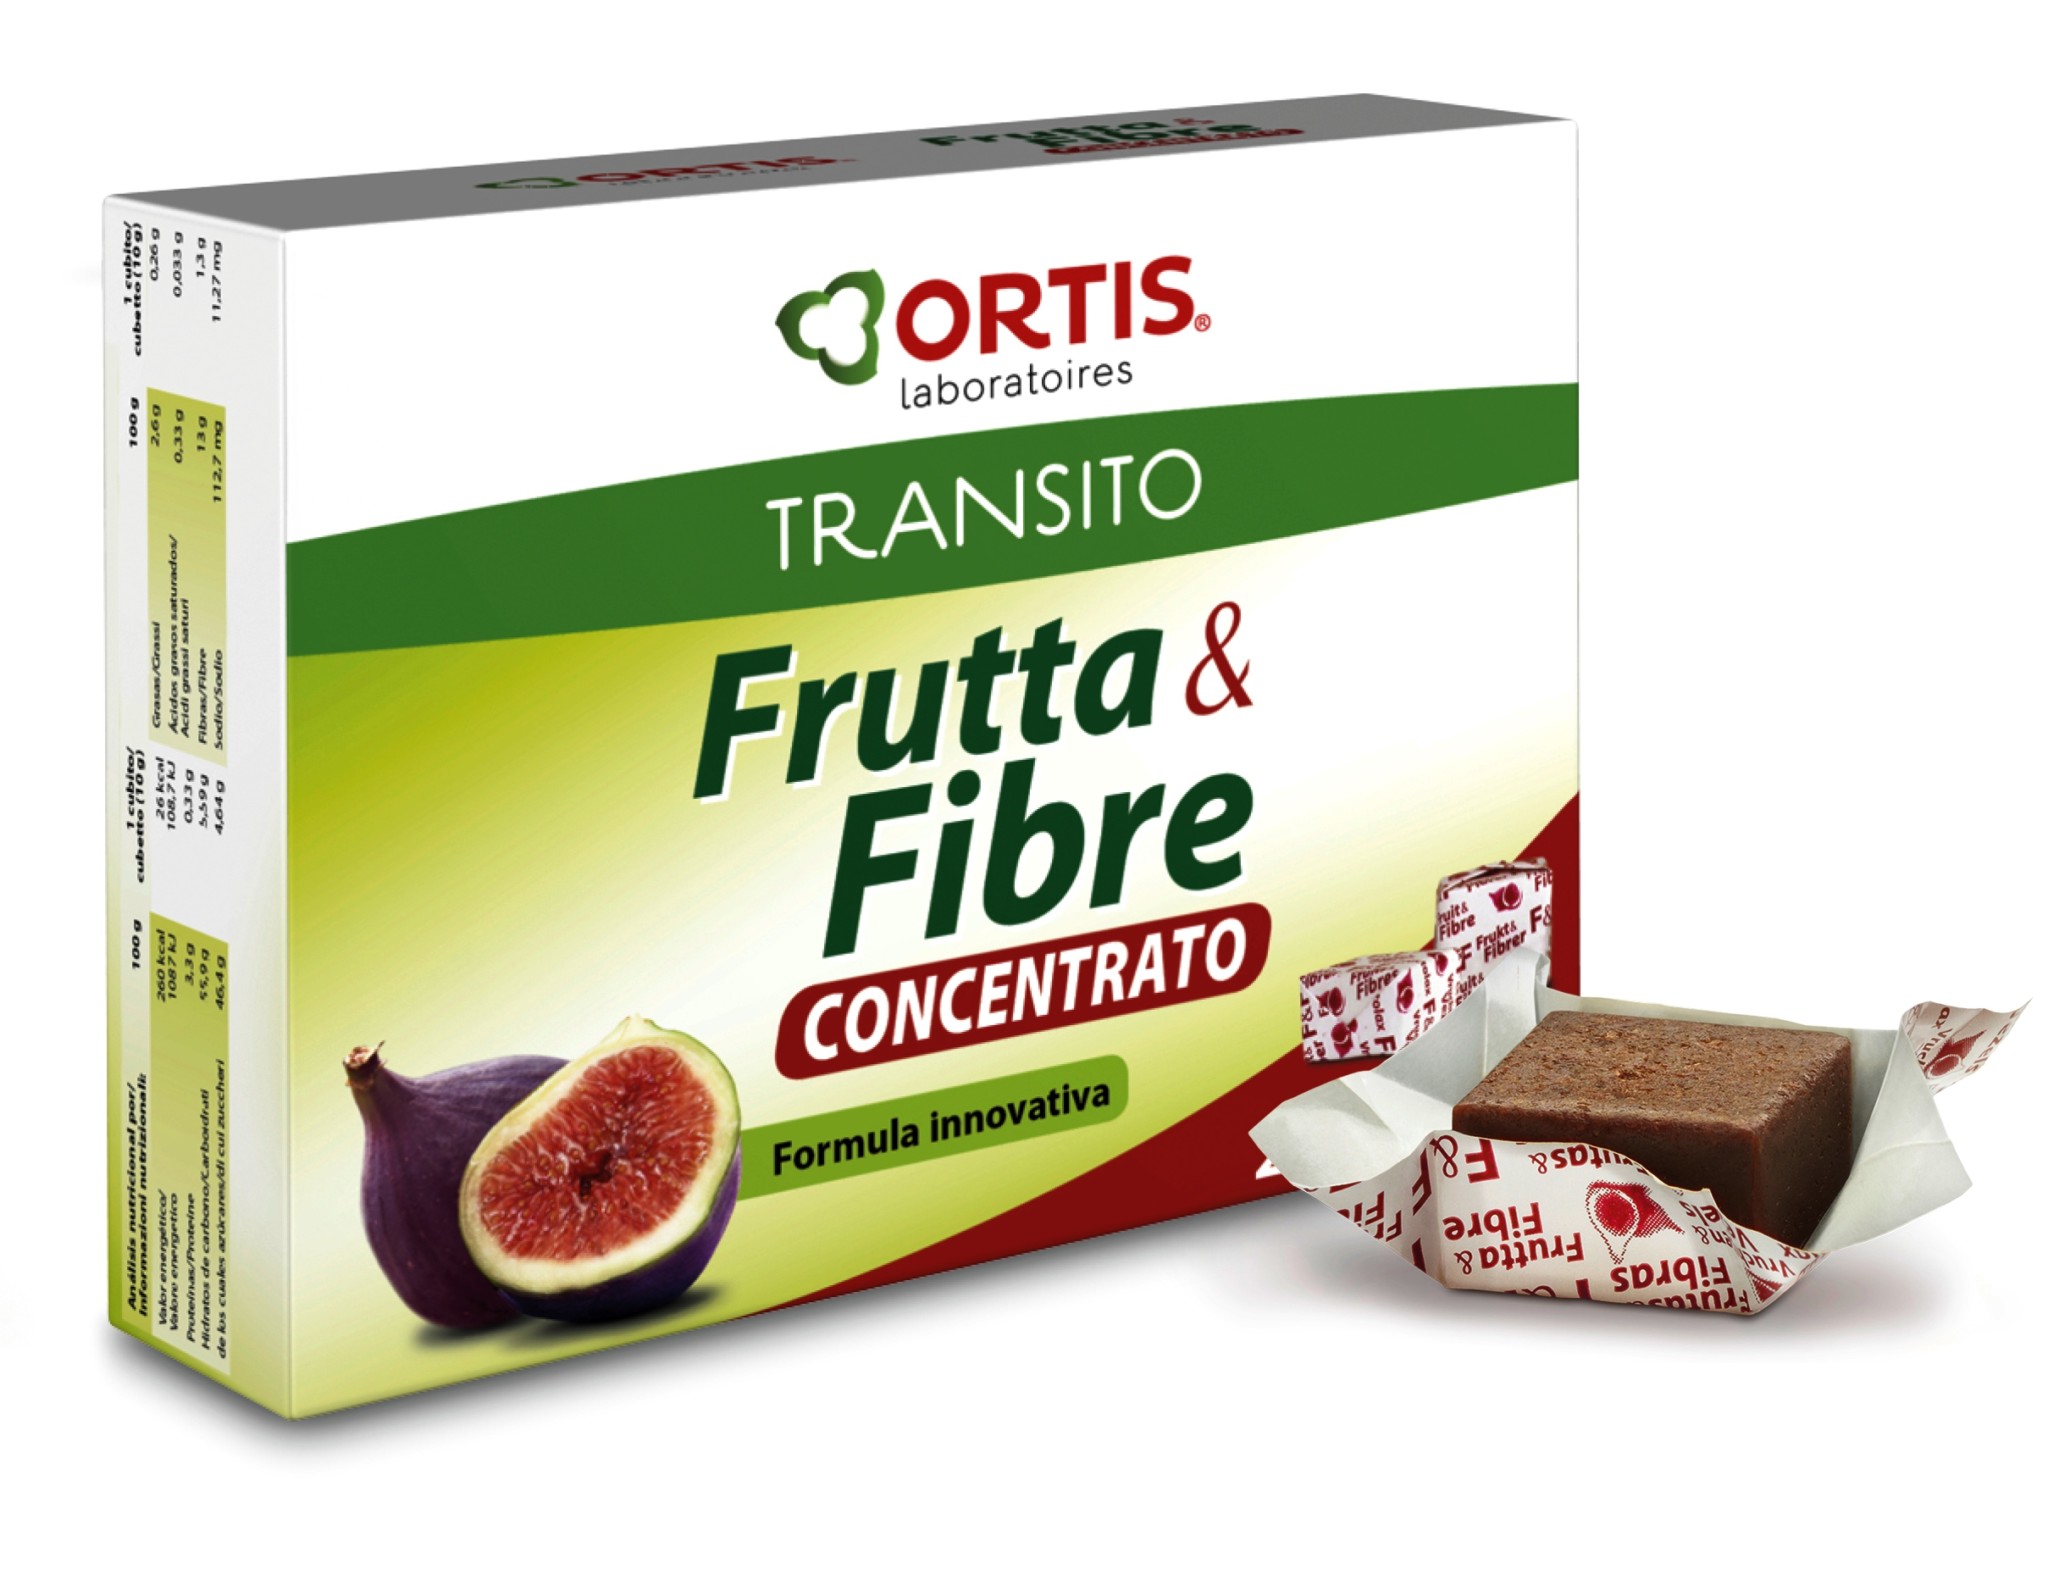 Frutta & Fibre Concentrato di Ortis Laboratories